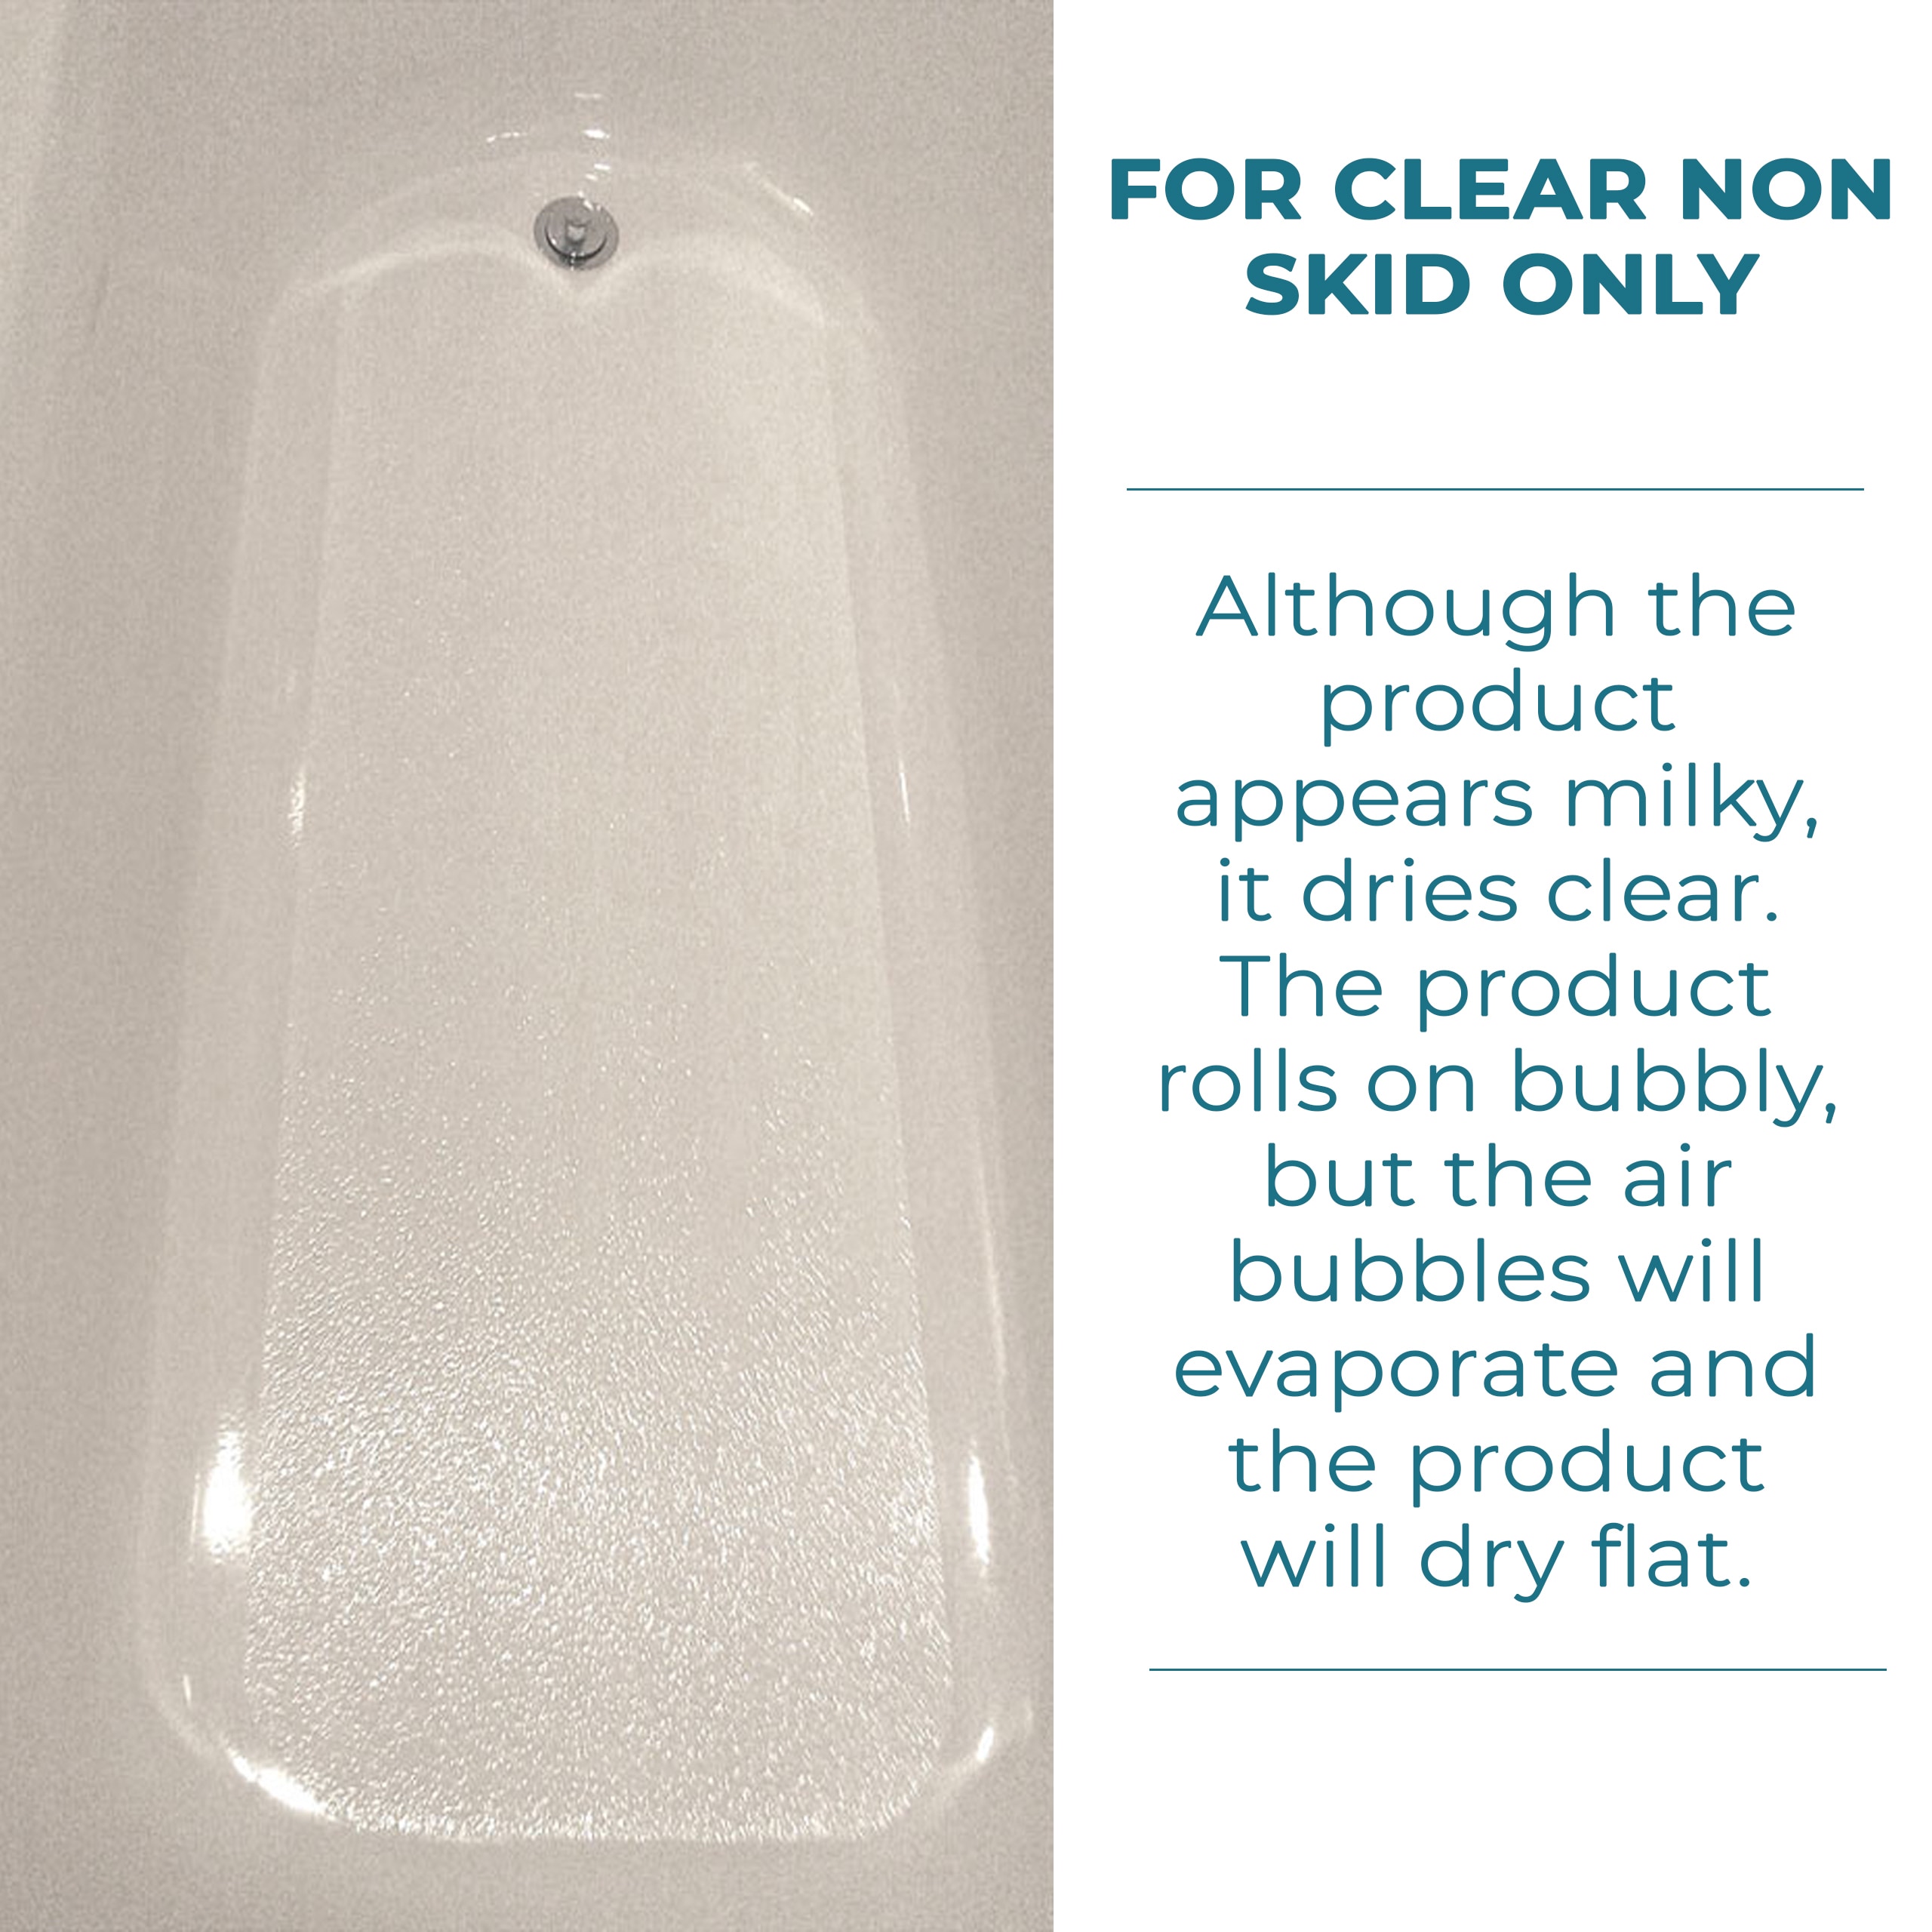 Shower Grip Clear Anti-Slip Bathtub Coating by Grip It